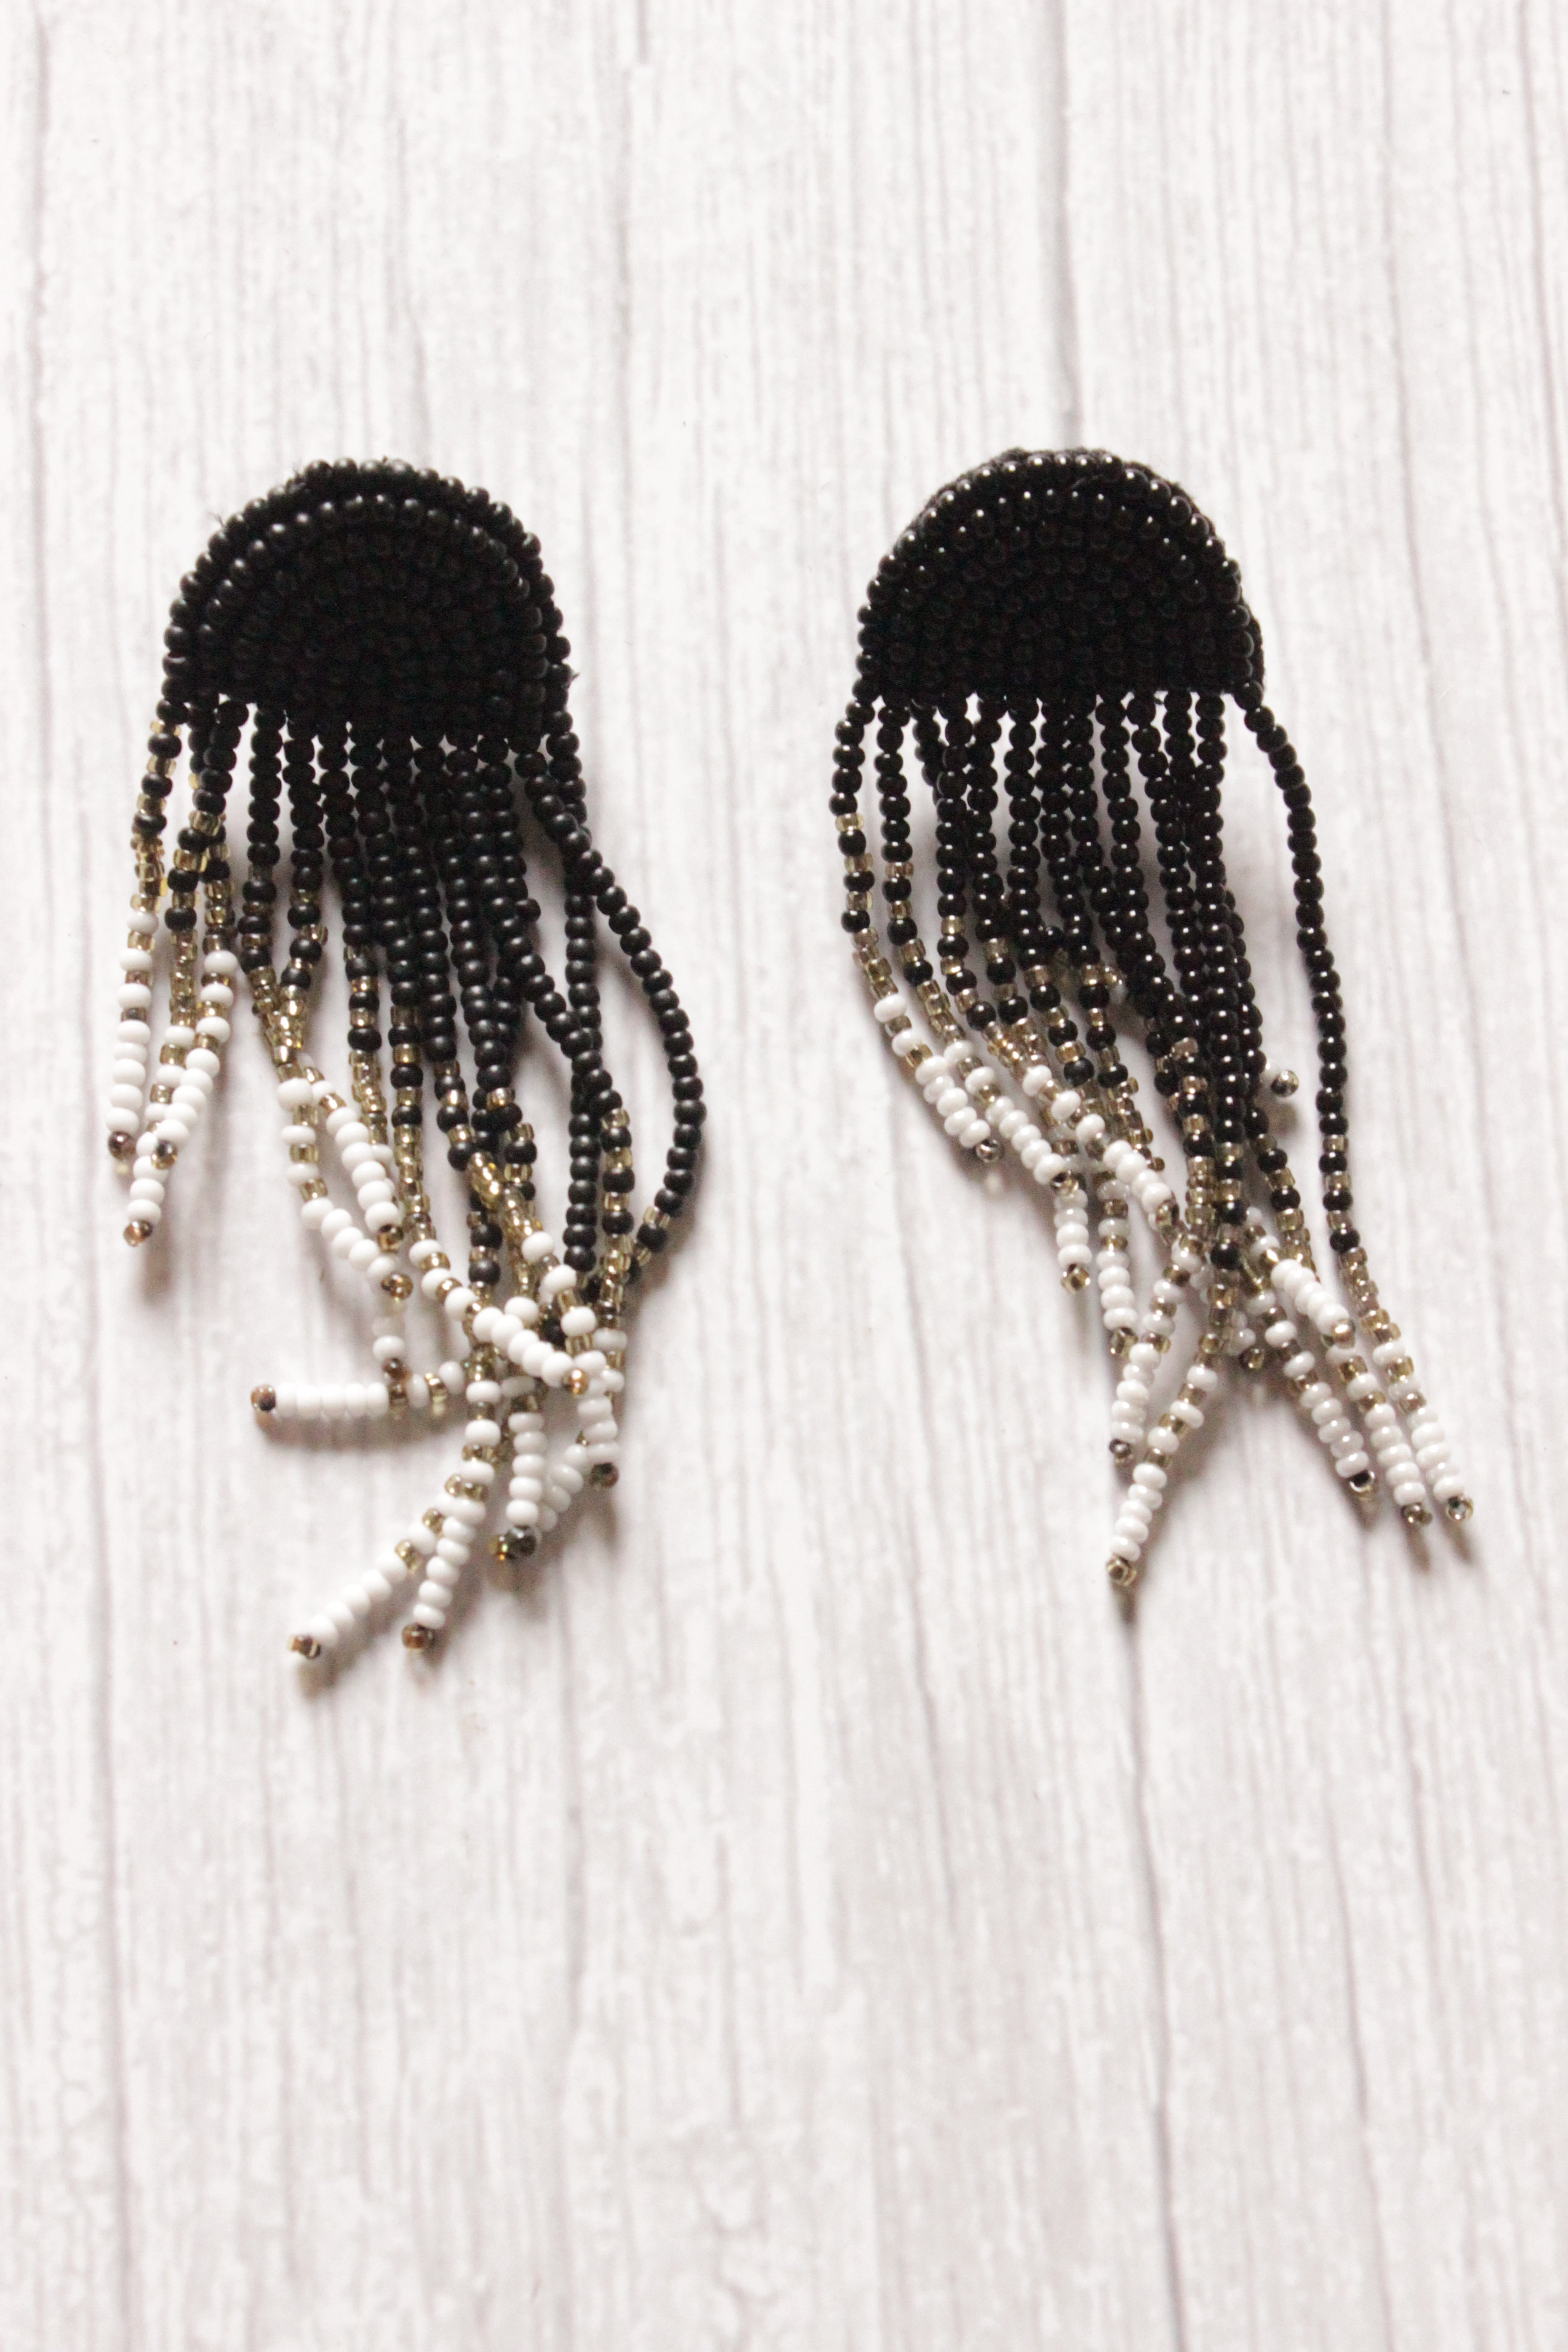 Black and White Monochrome Hand Braided Beads Boho Dangler Earrings